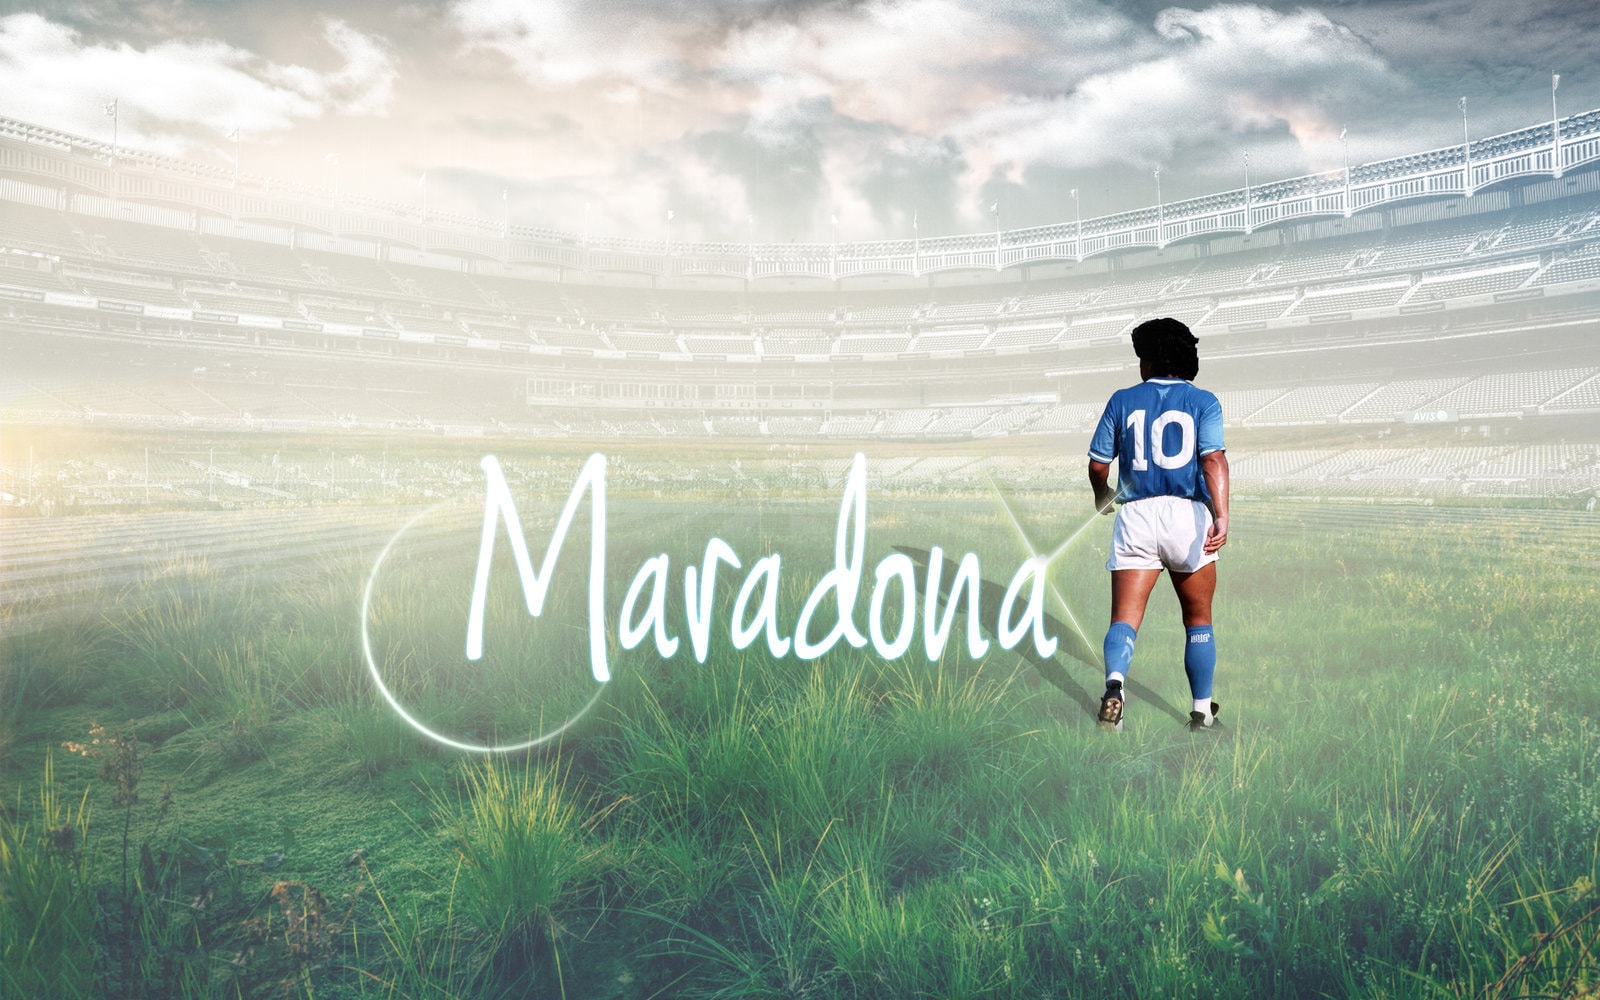 Maradona Wallpaper 10